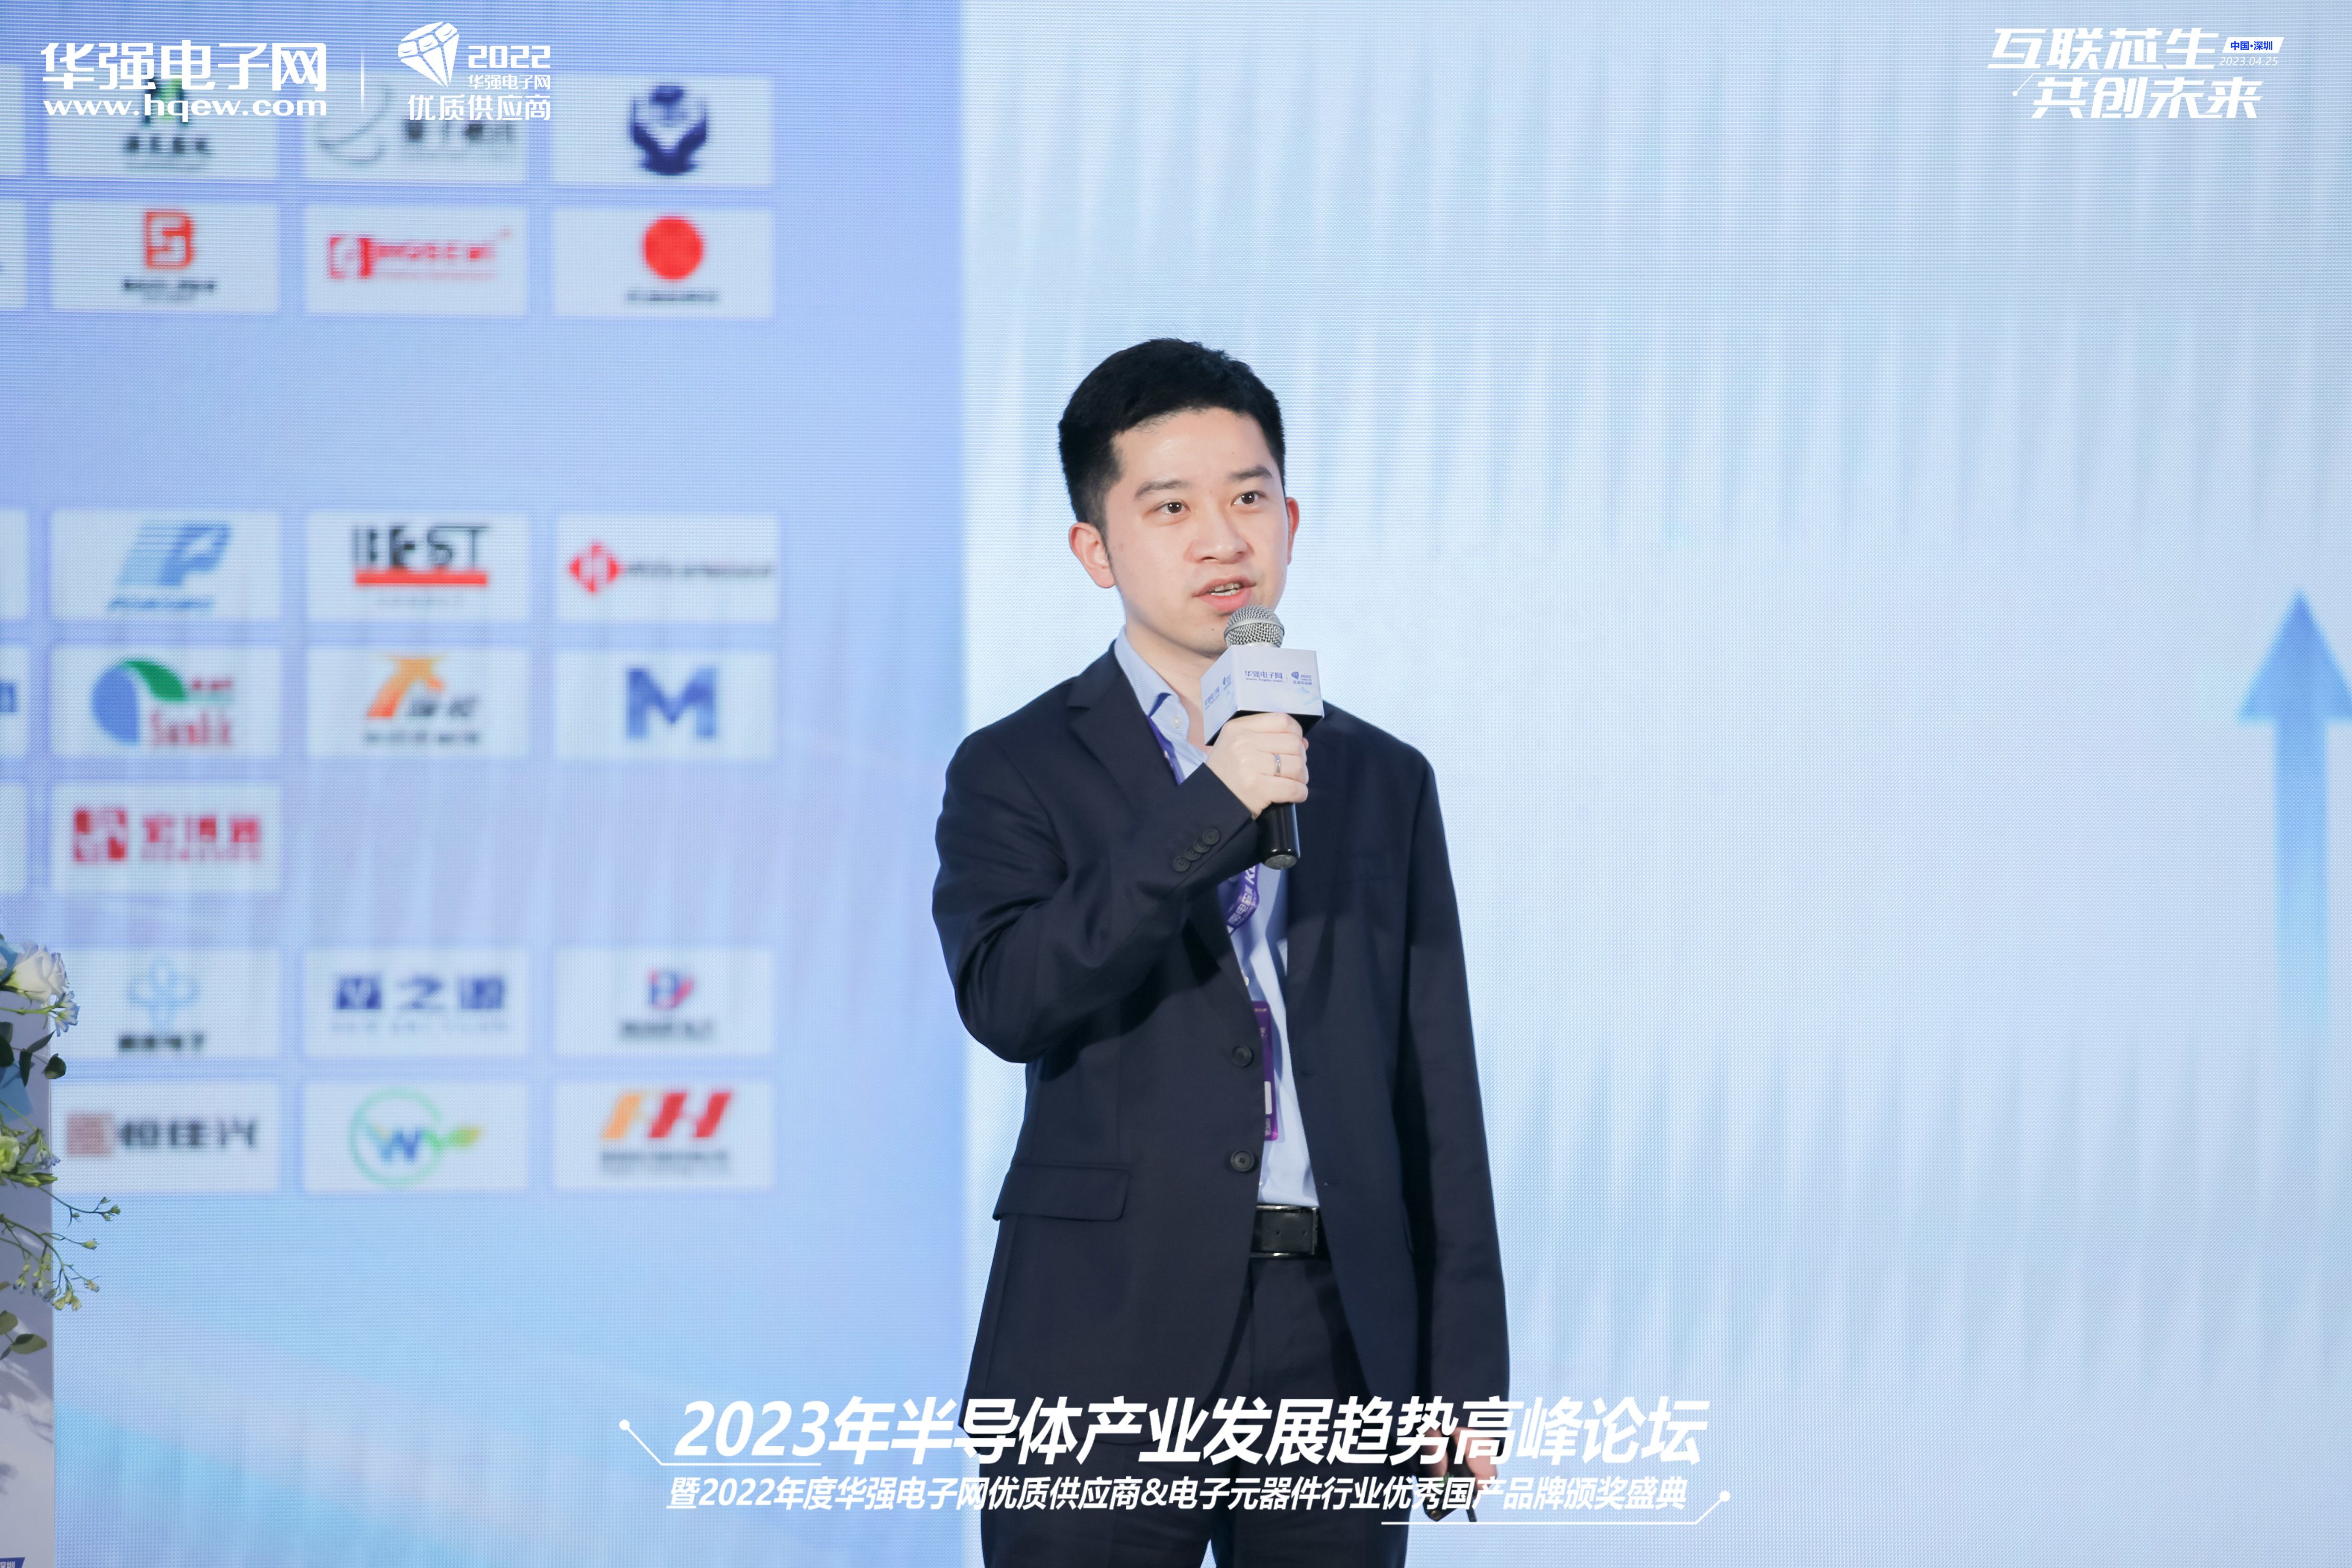 兆易创新科技集团股份有限公司 市场经理 徐杰